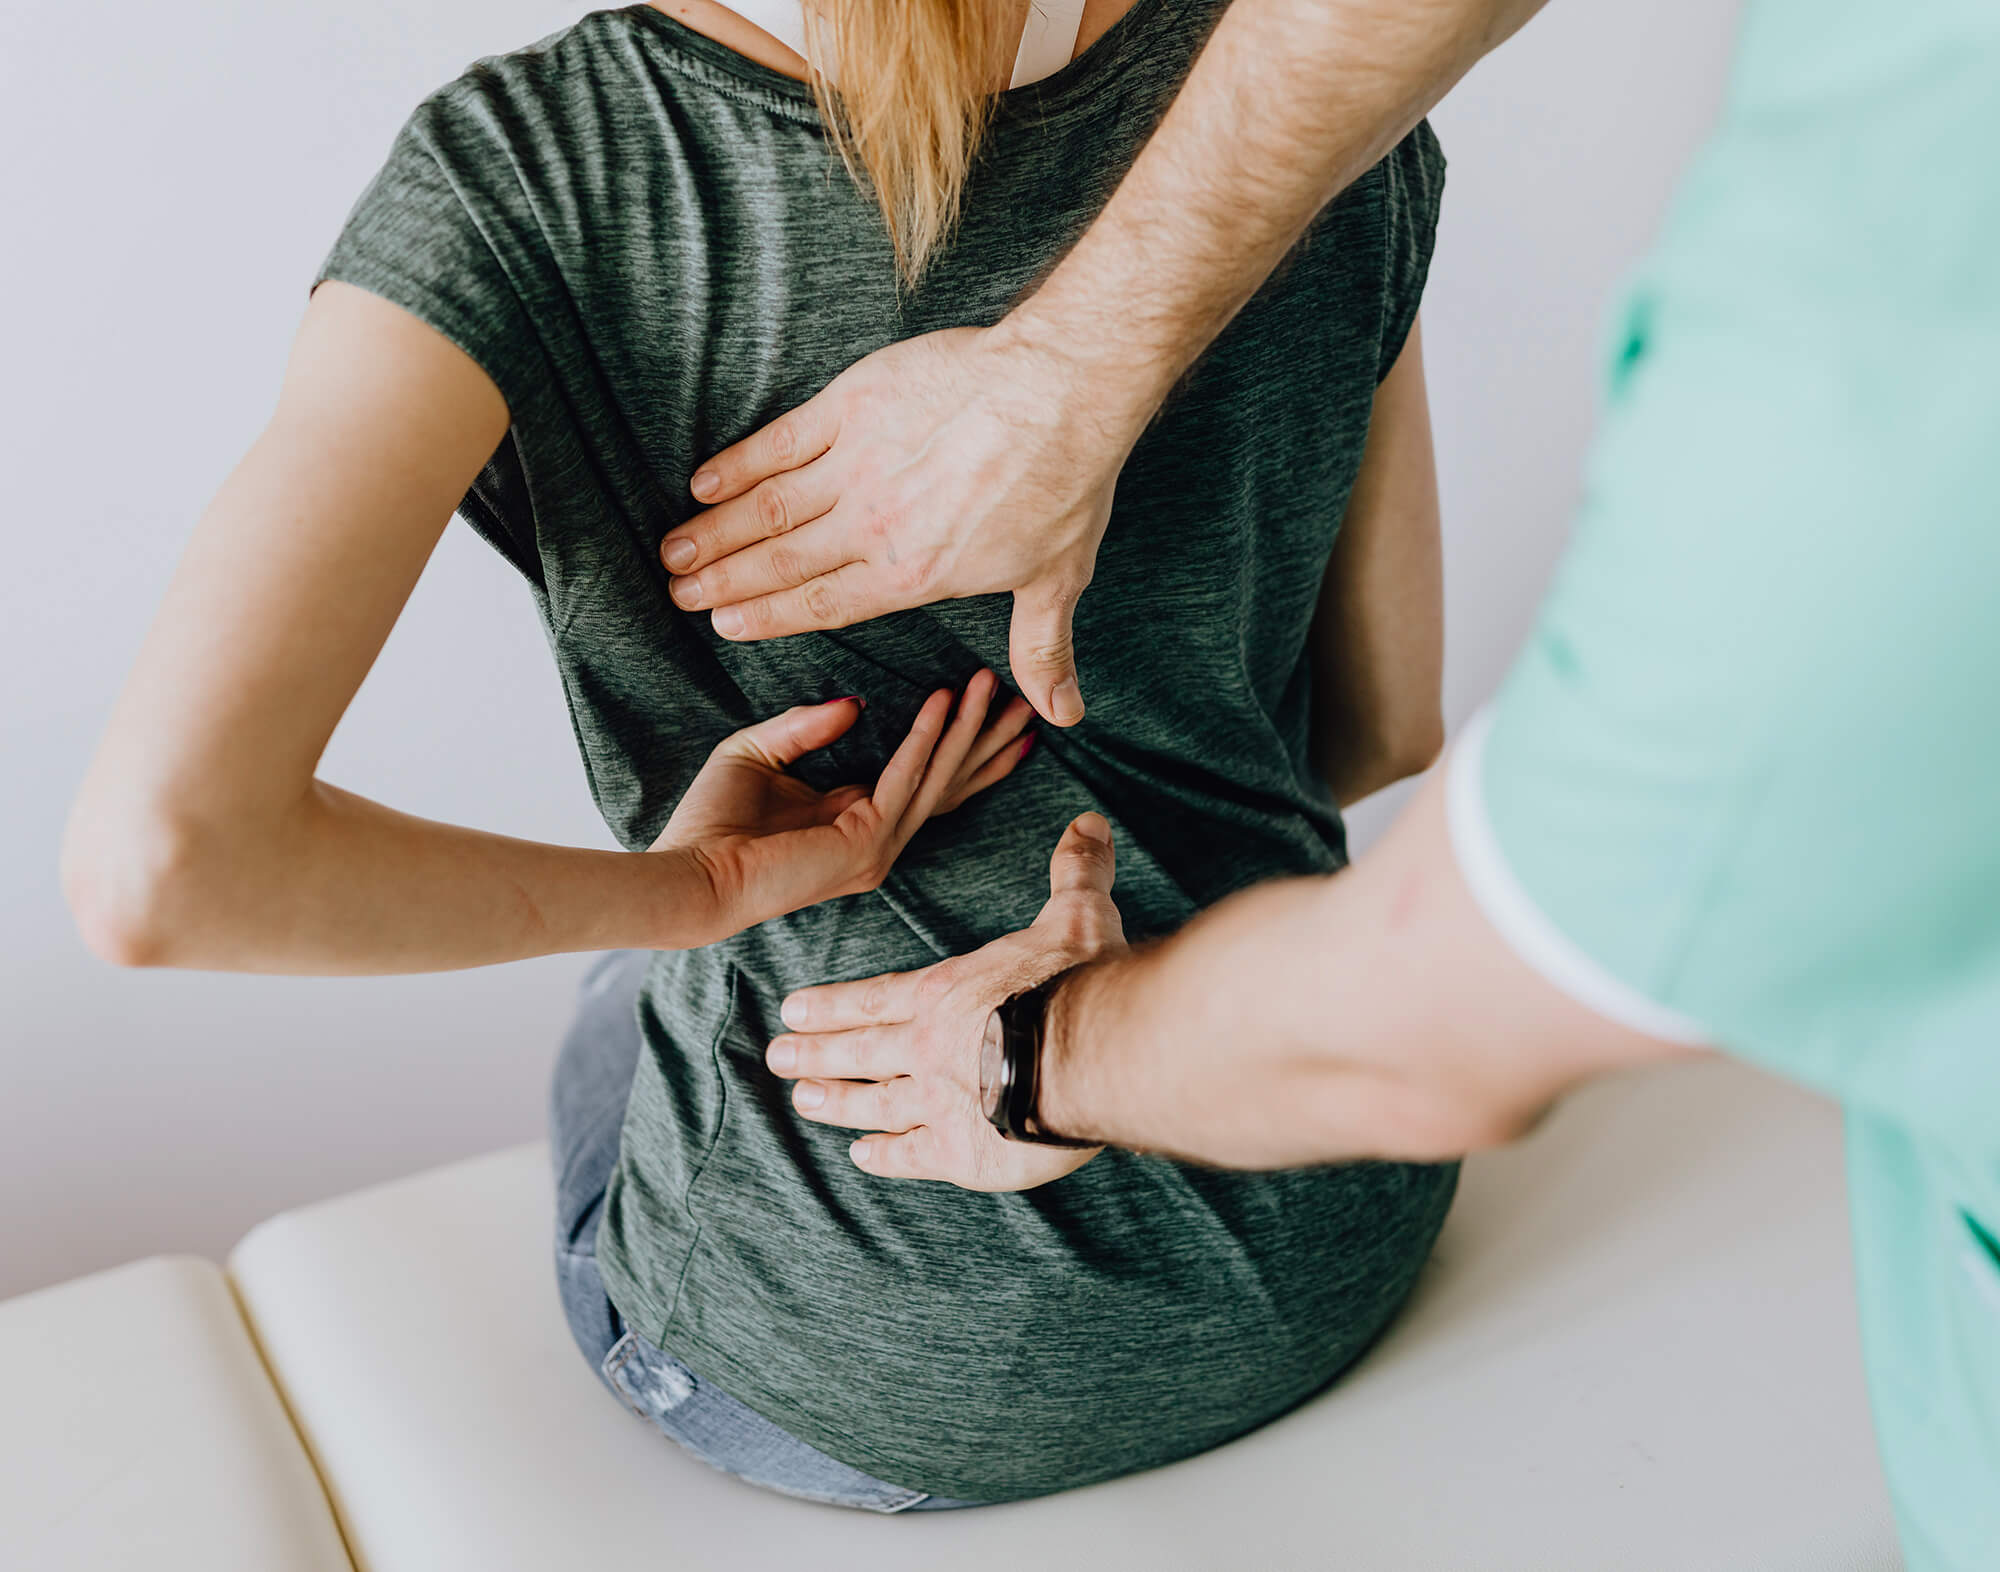 Ostéopathe qui pratique un massage sur le dos de sa patiente afin qu'elle se sente mieux